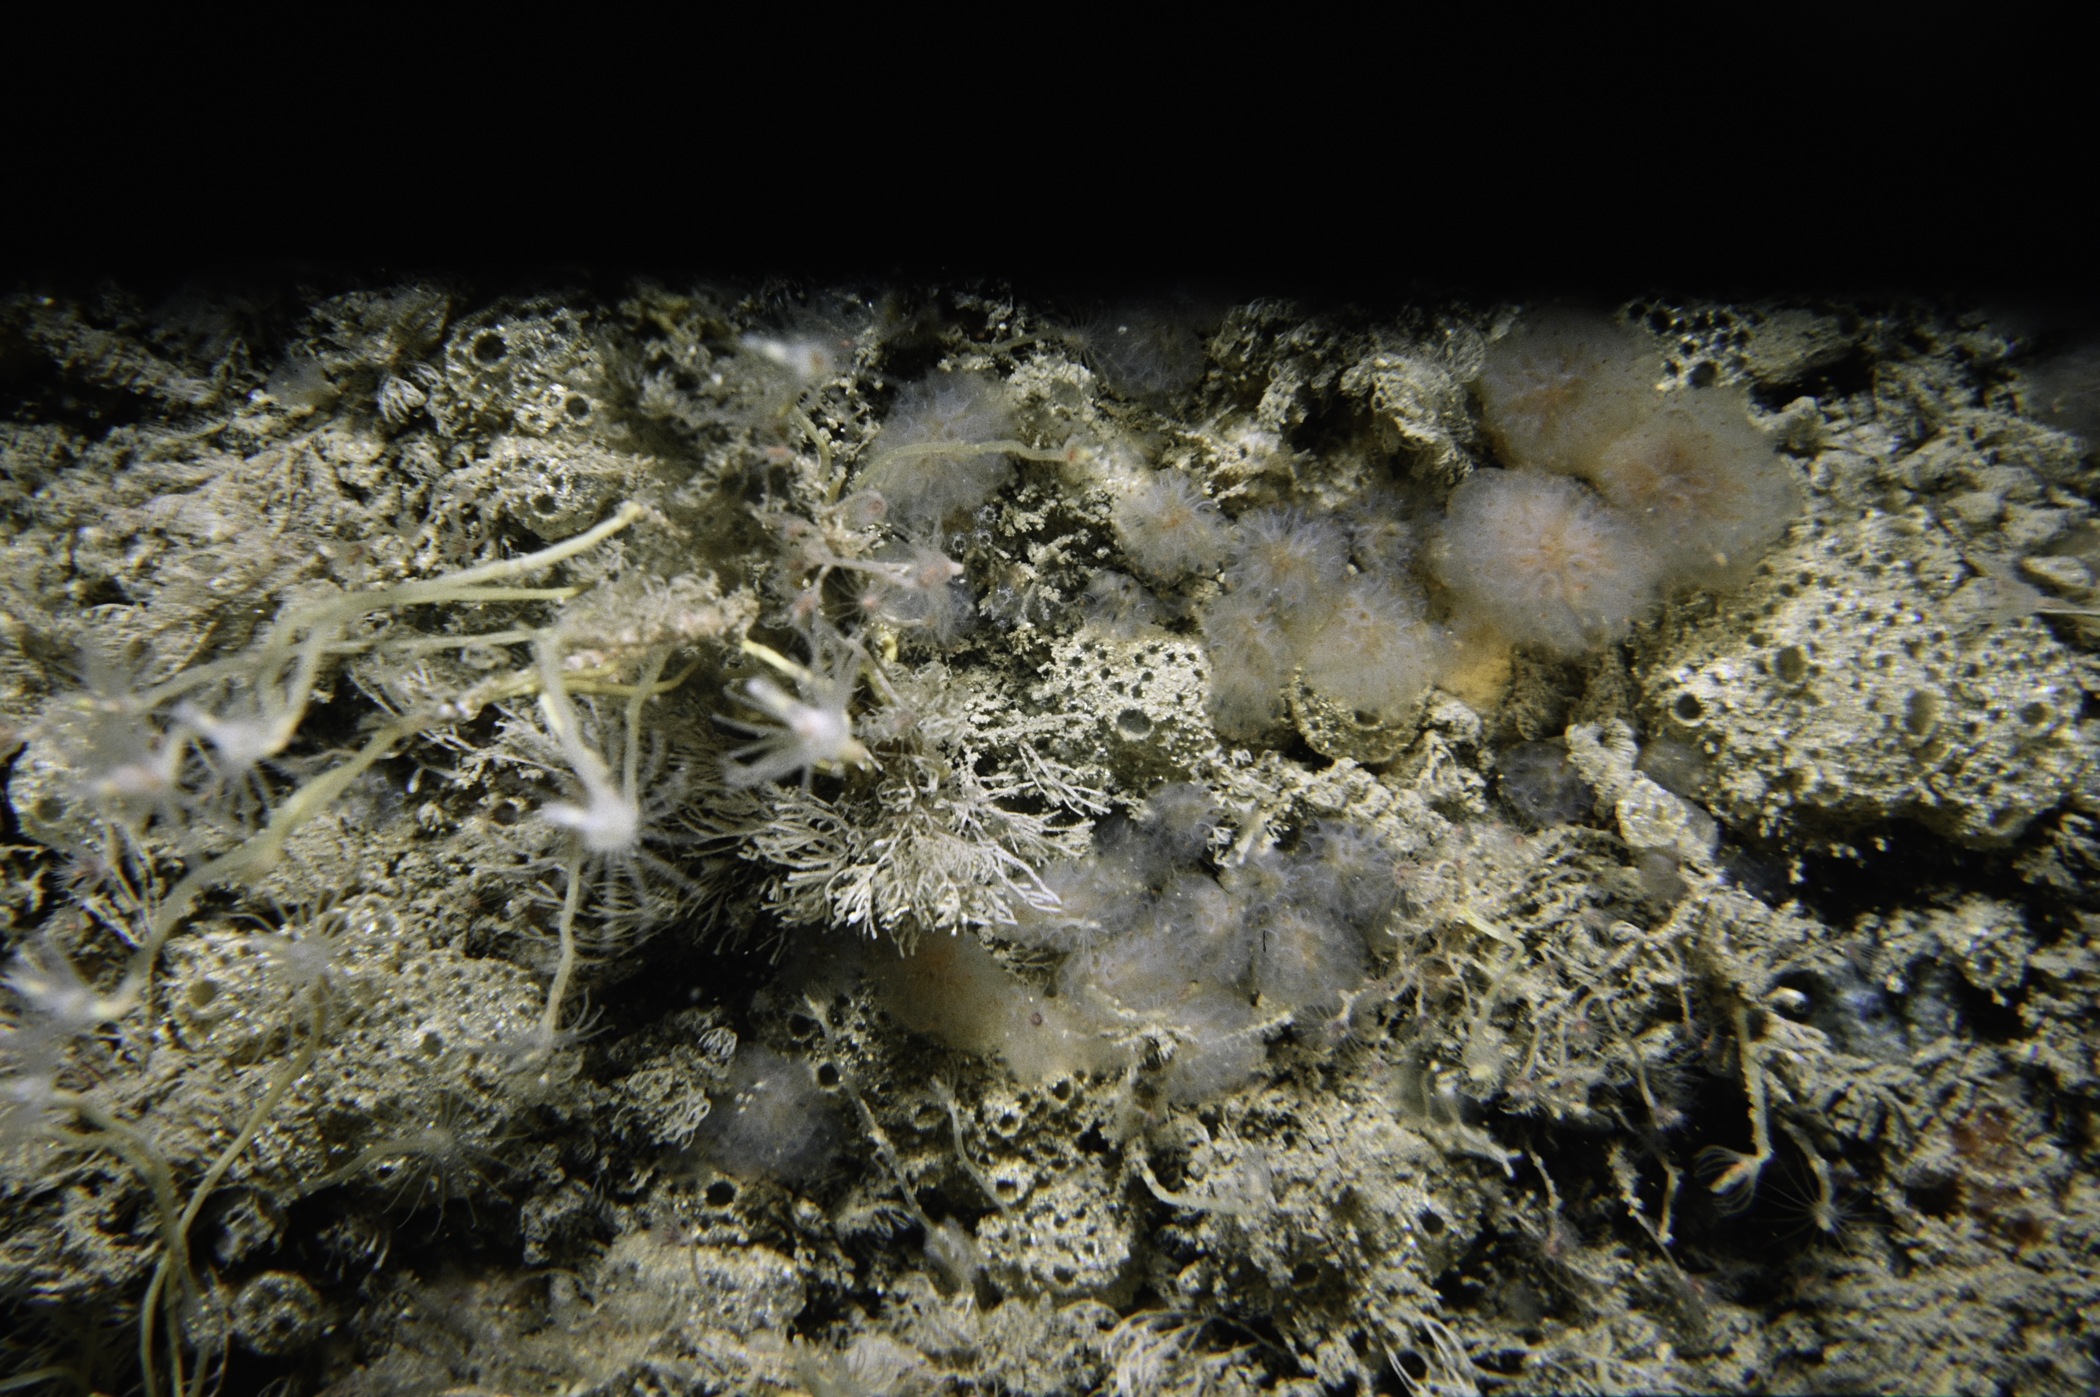 Tubularia indivisa, Polyclinum aurantium, Aplidium punctum. Site: Carrickmannanon Rock, Ballycastle. 